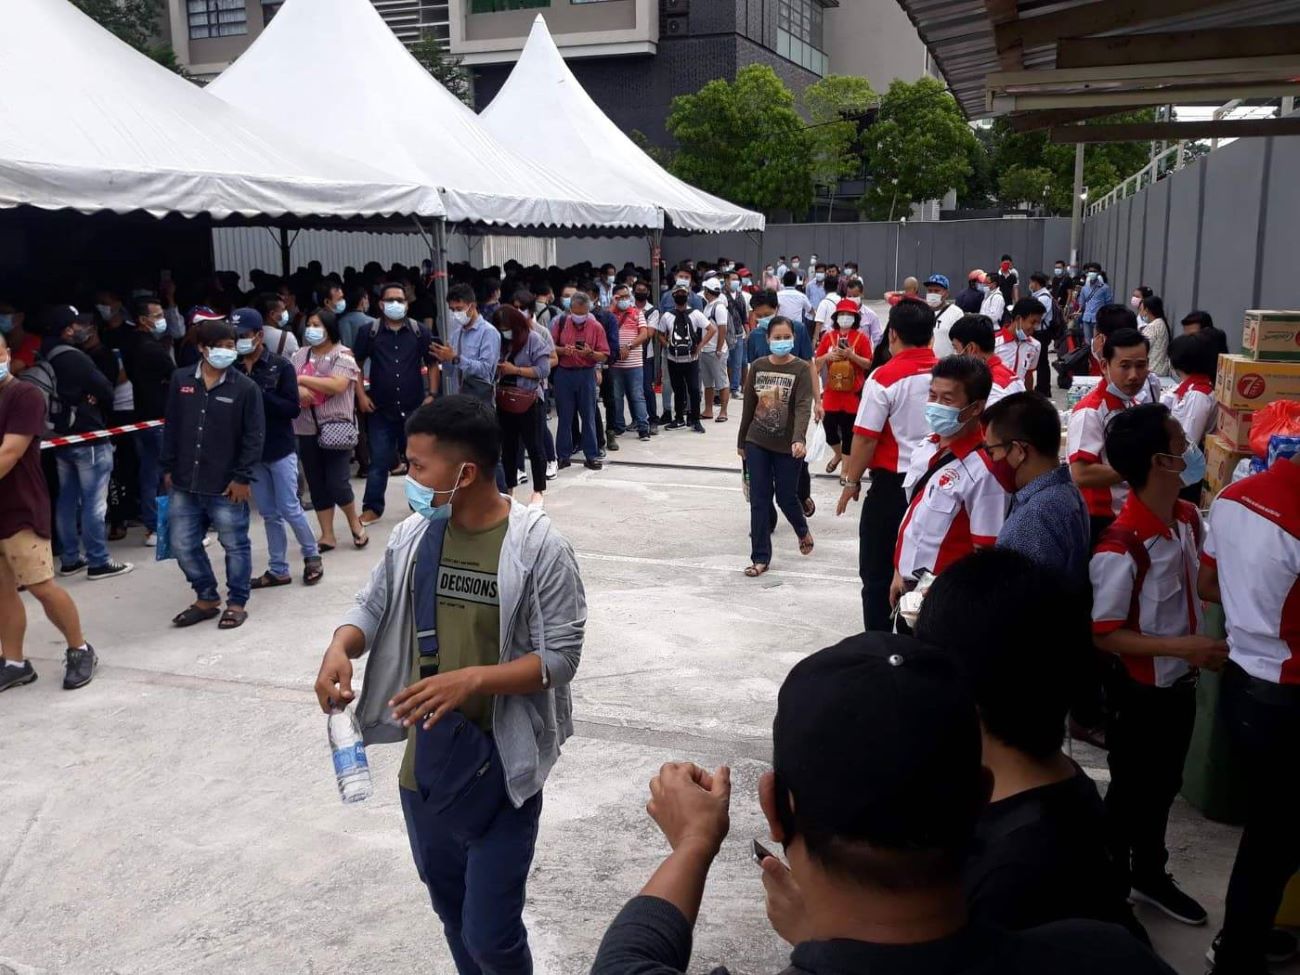 မလေးရှားက လုပ်သားခေါ်ယူမှုရပ်ထား၊ ပွဲစားများမှ လူစုဆောင်းနေ